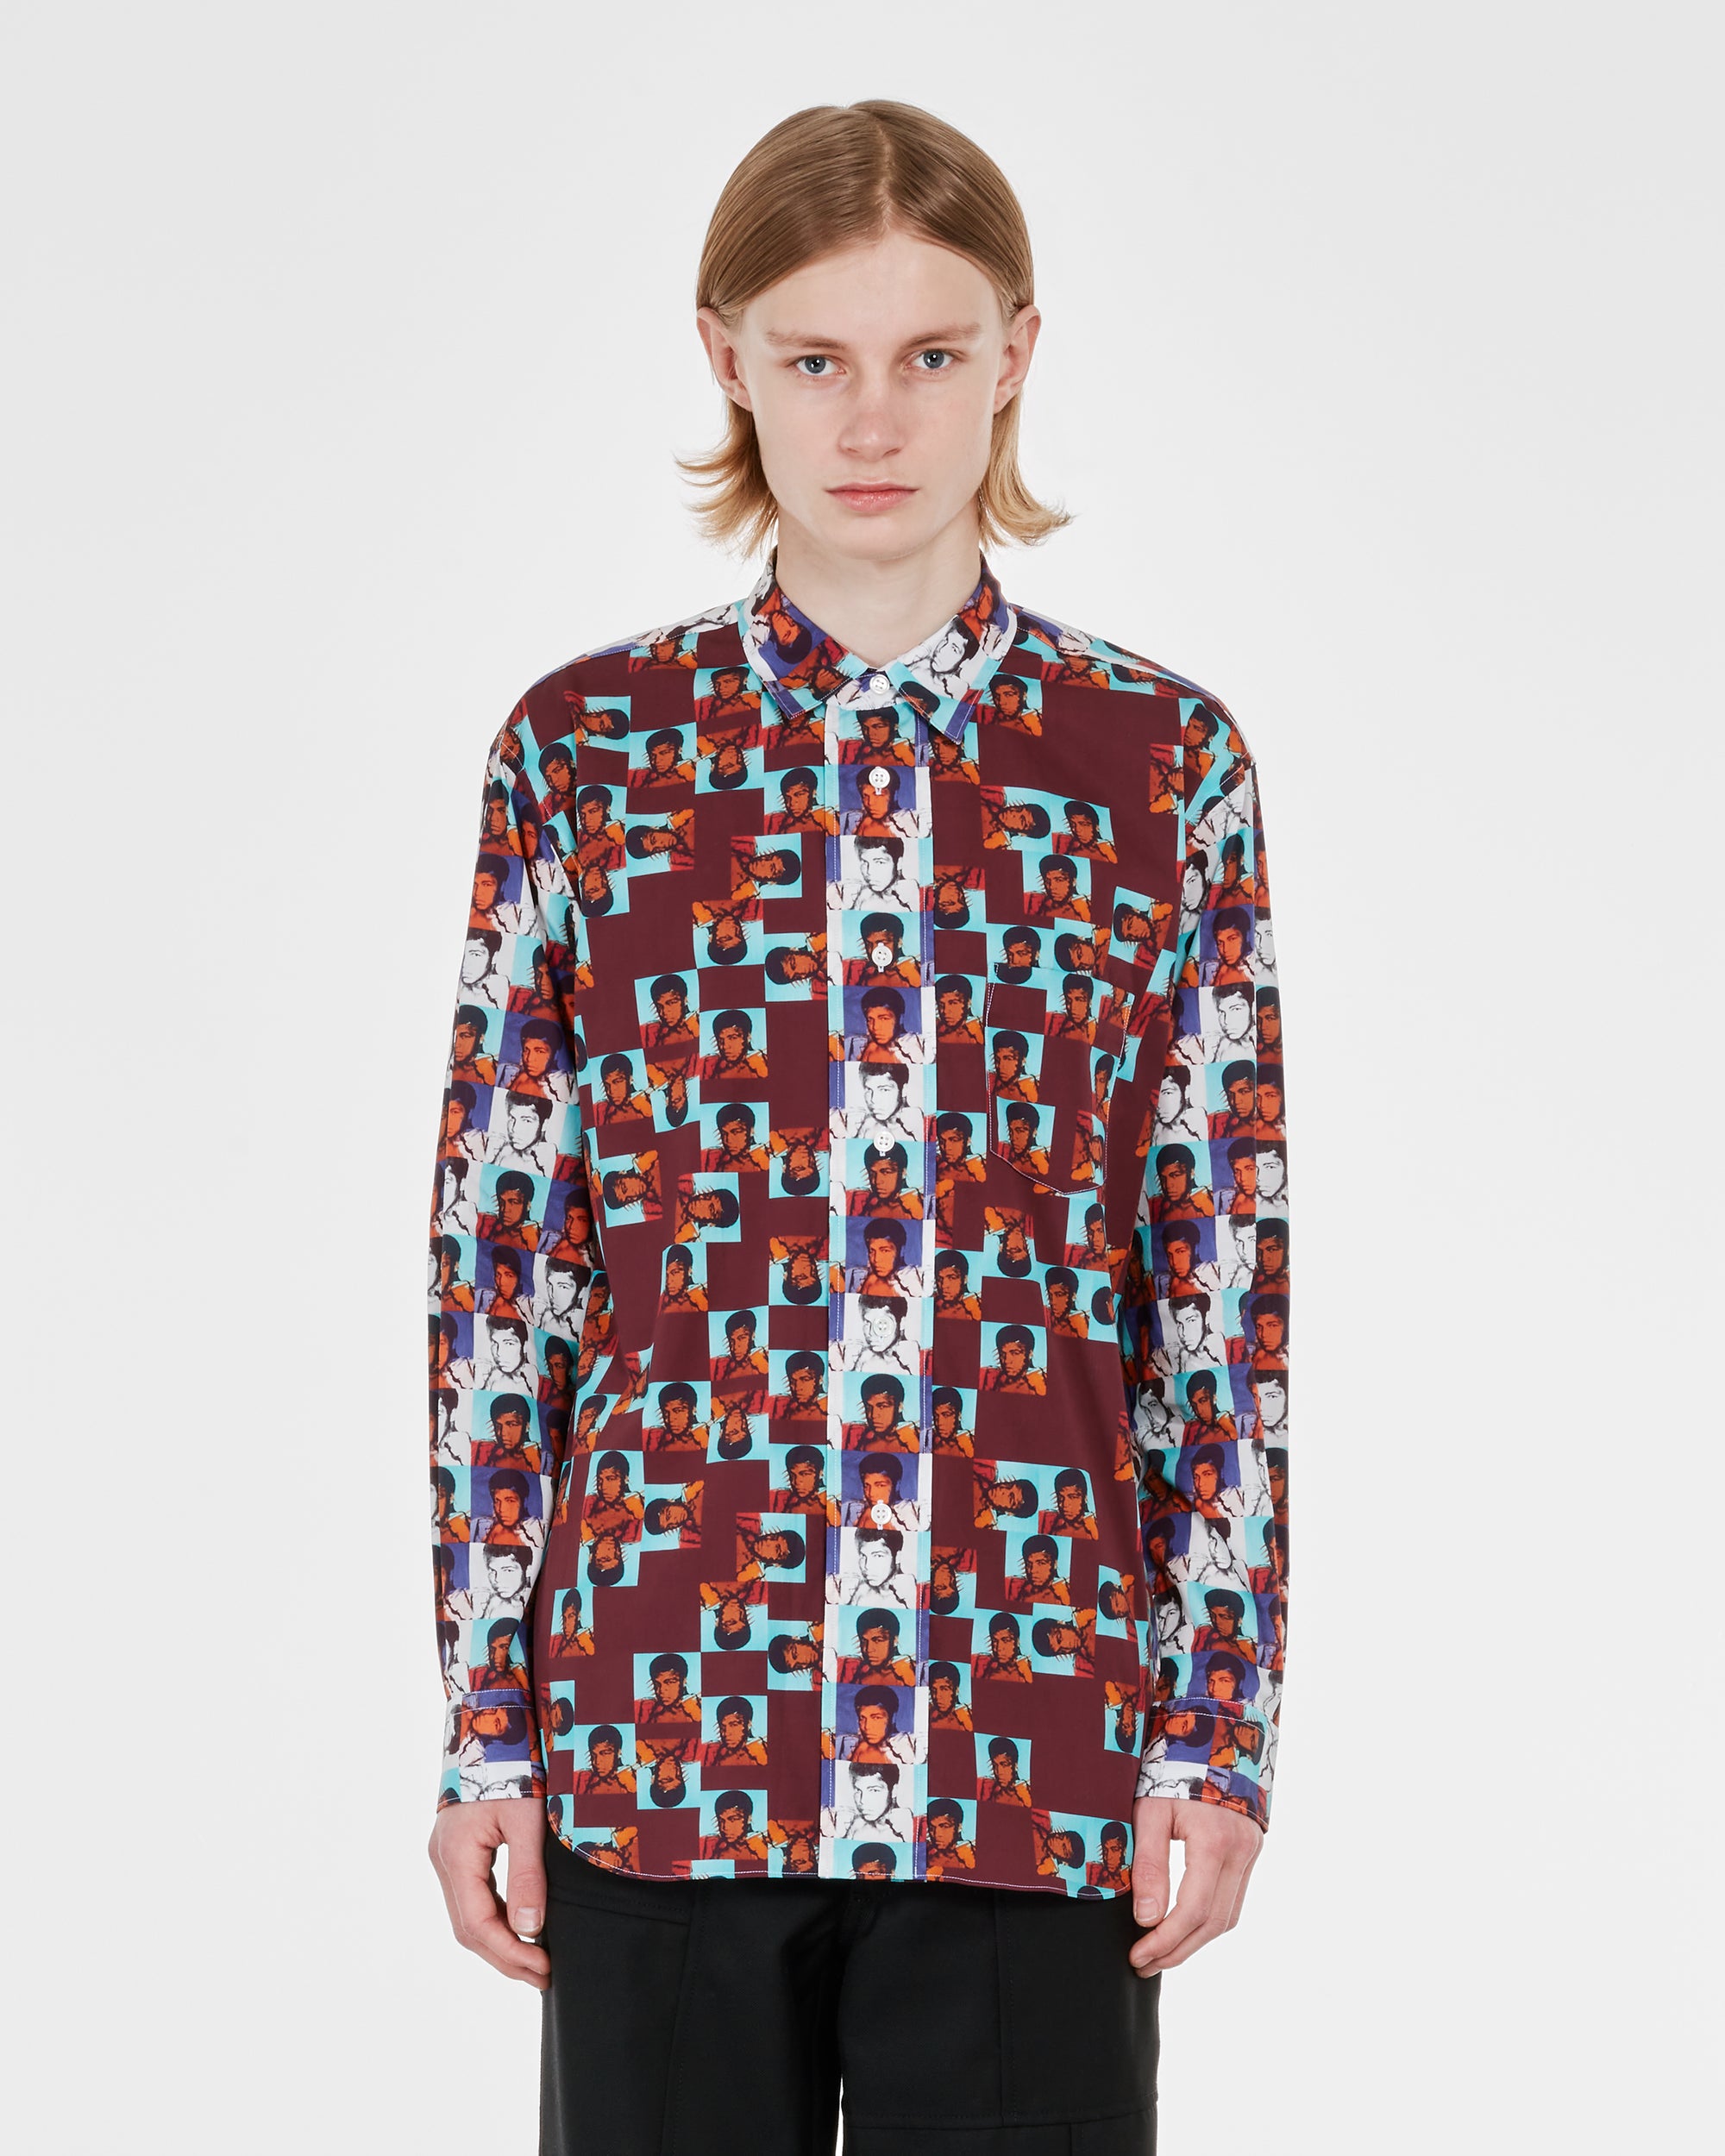 CDG Shirt - Andy Warhol Cotton Poplin Shirt - (Print B/Print P) view 2